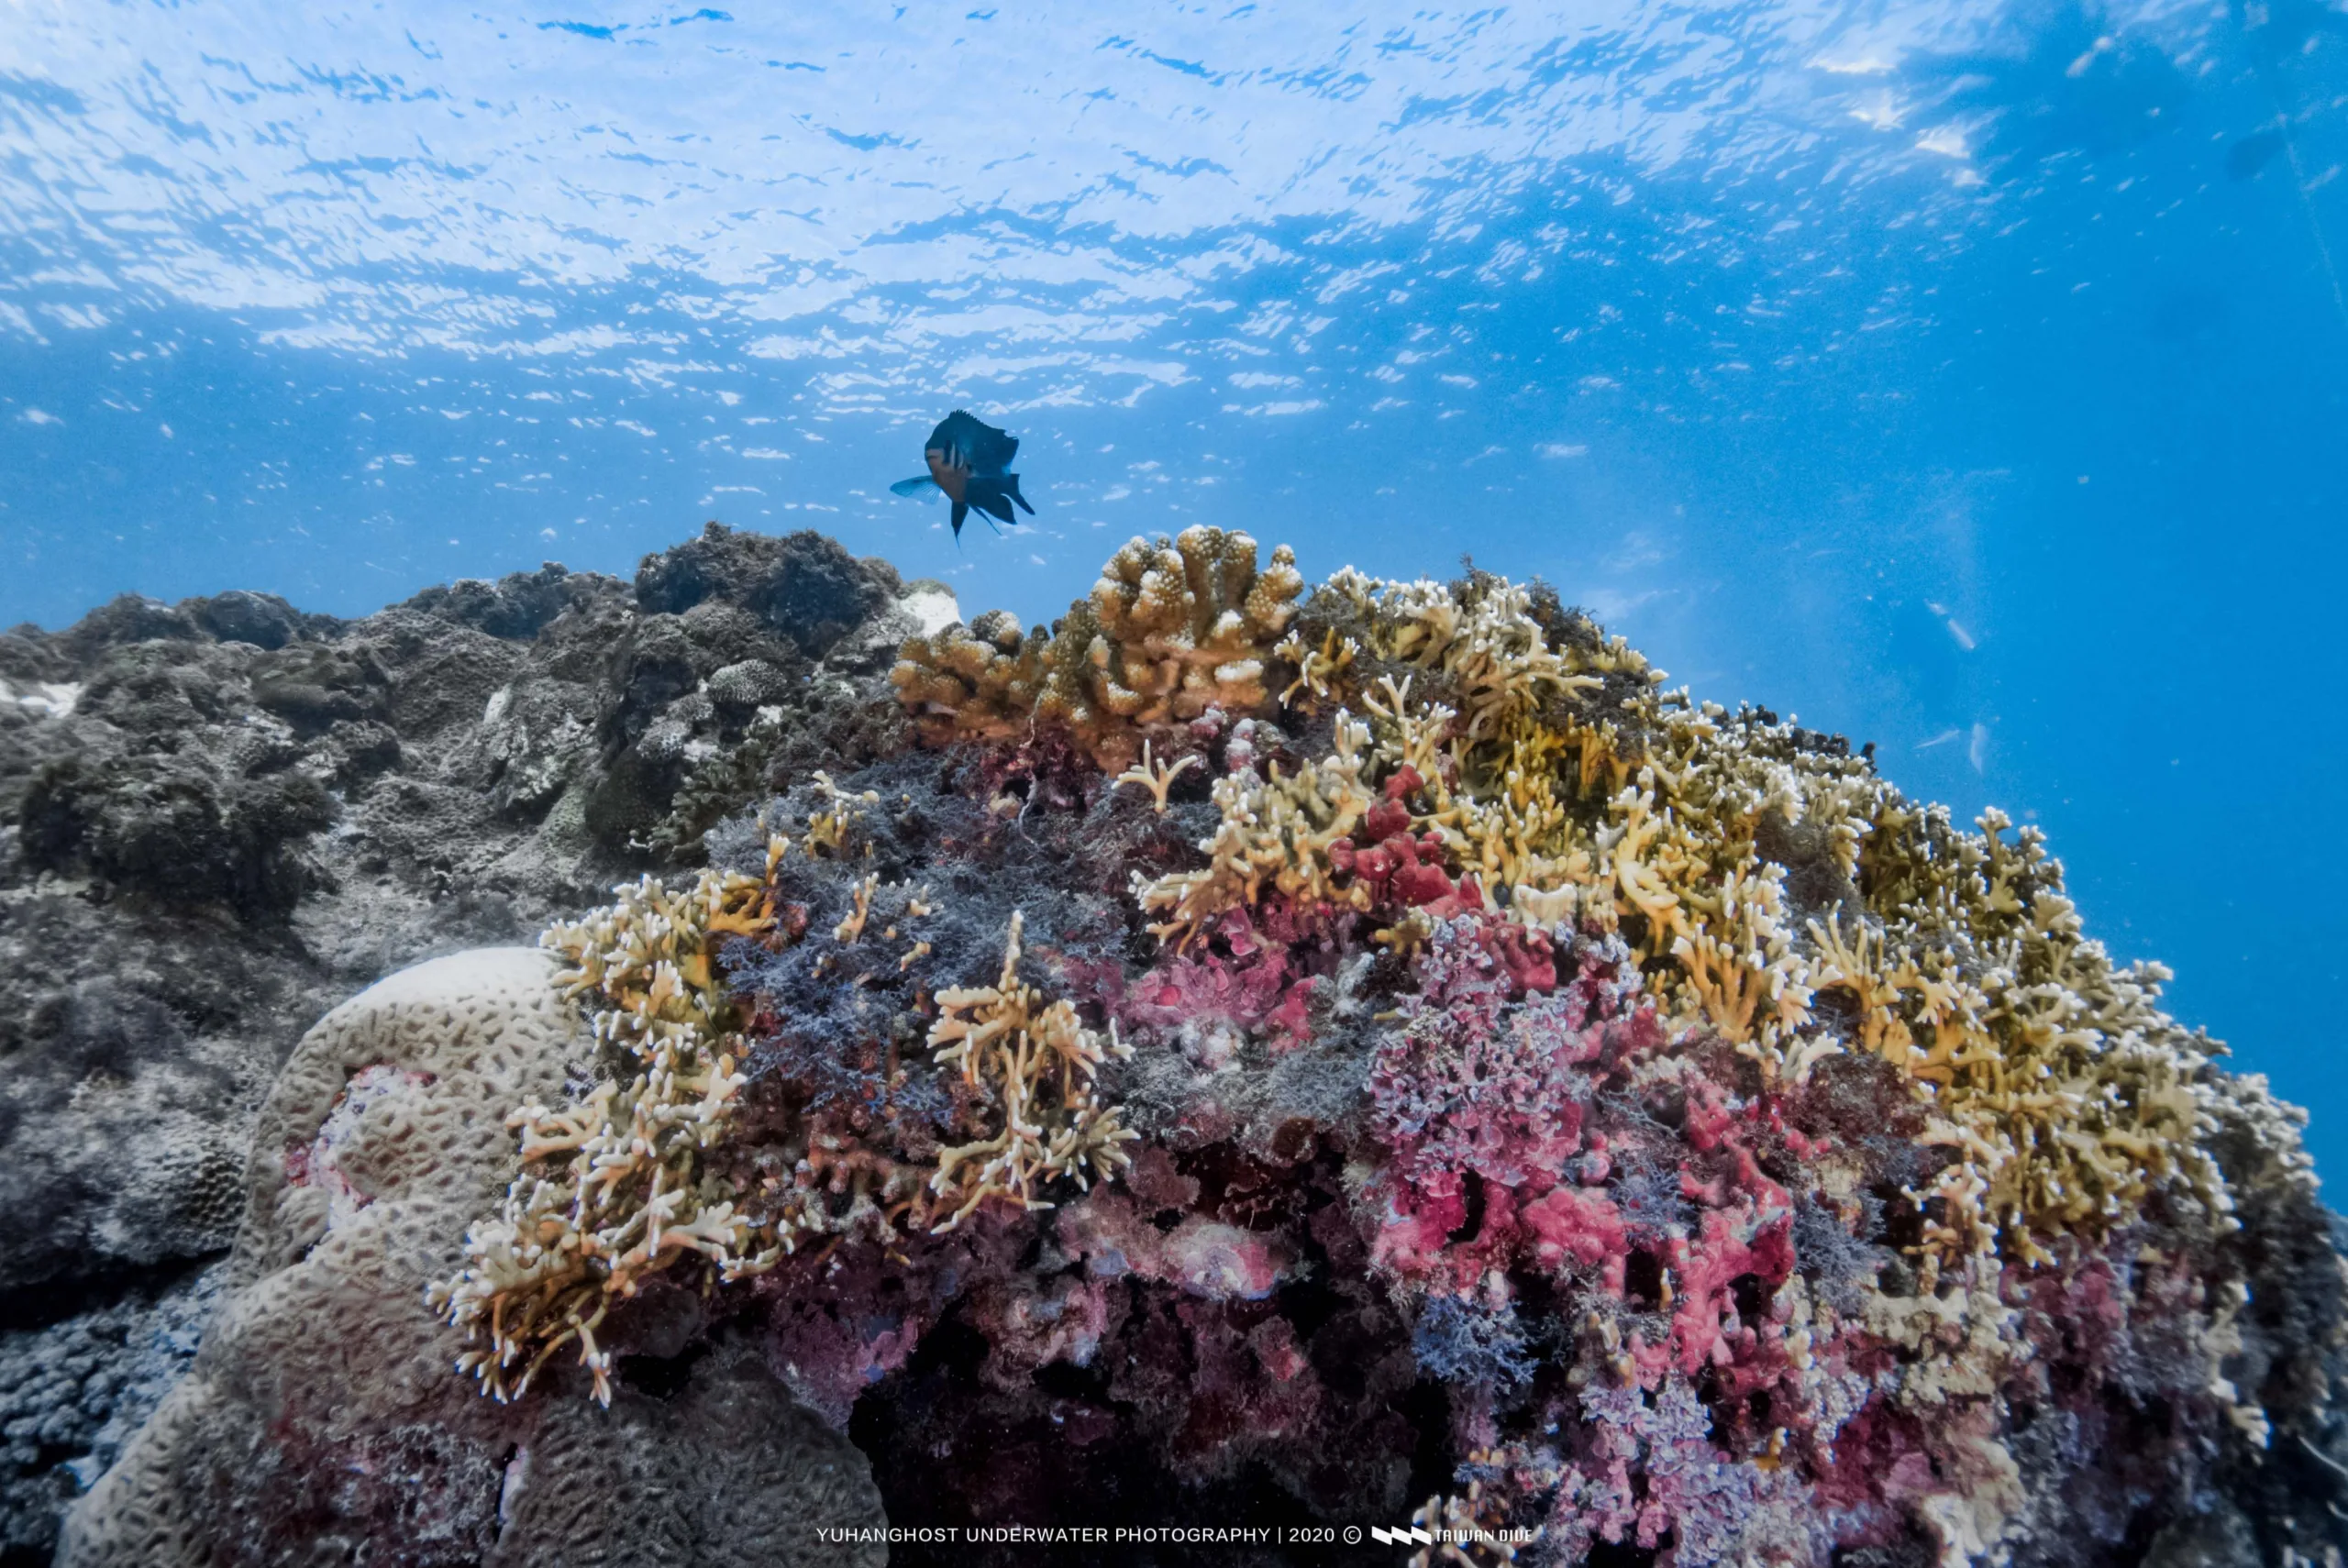 小琉球珊瑚白化問題嚴重 海溫驟升為關鍵原因